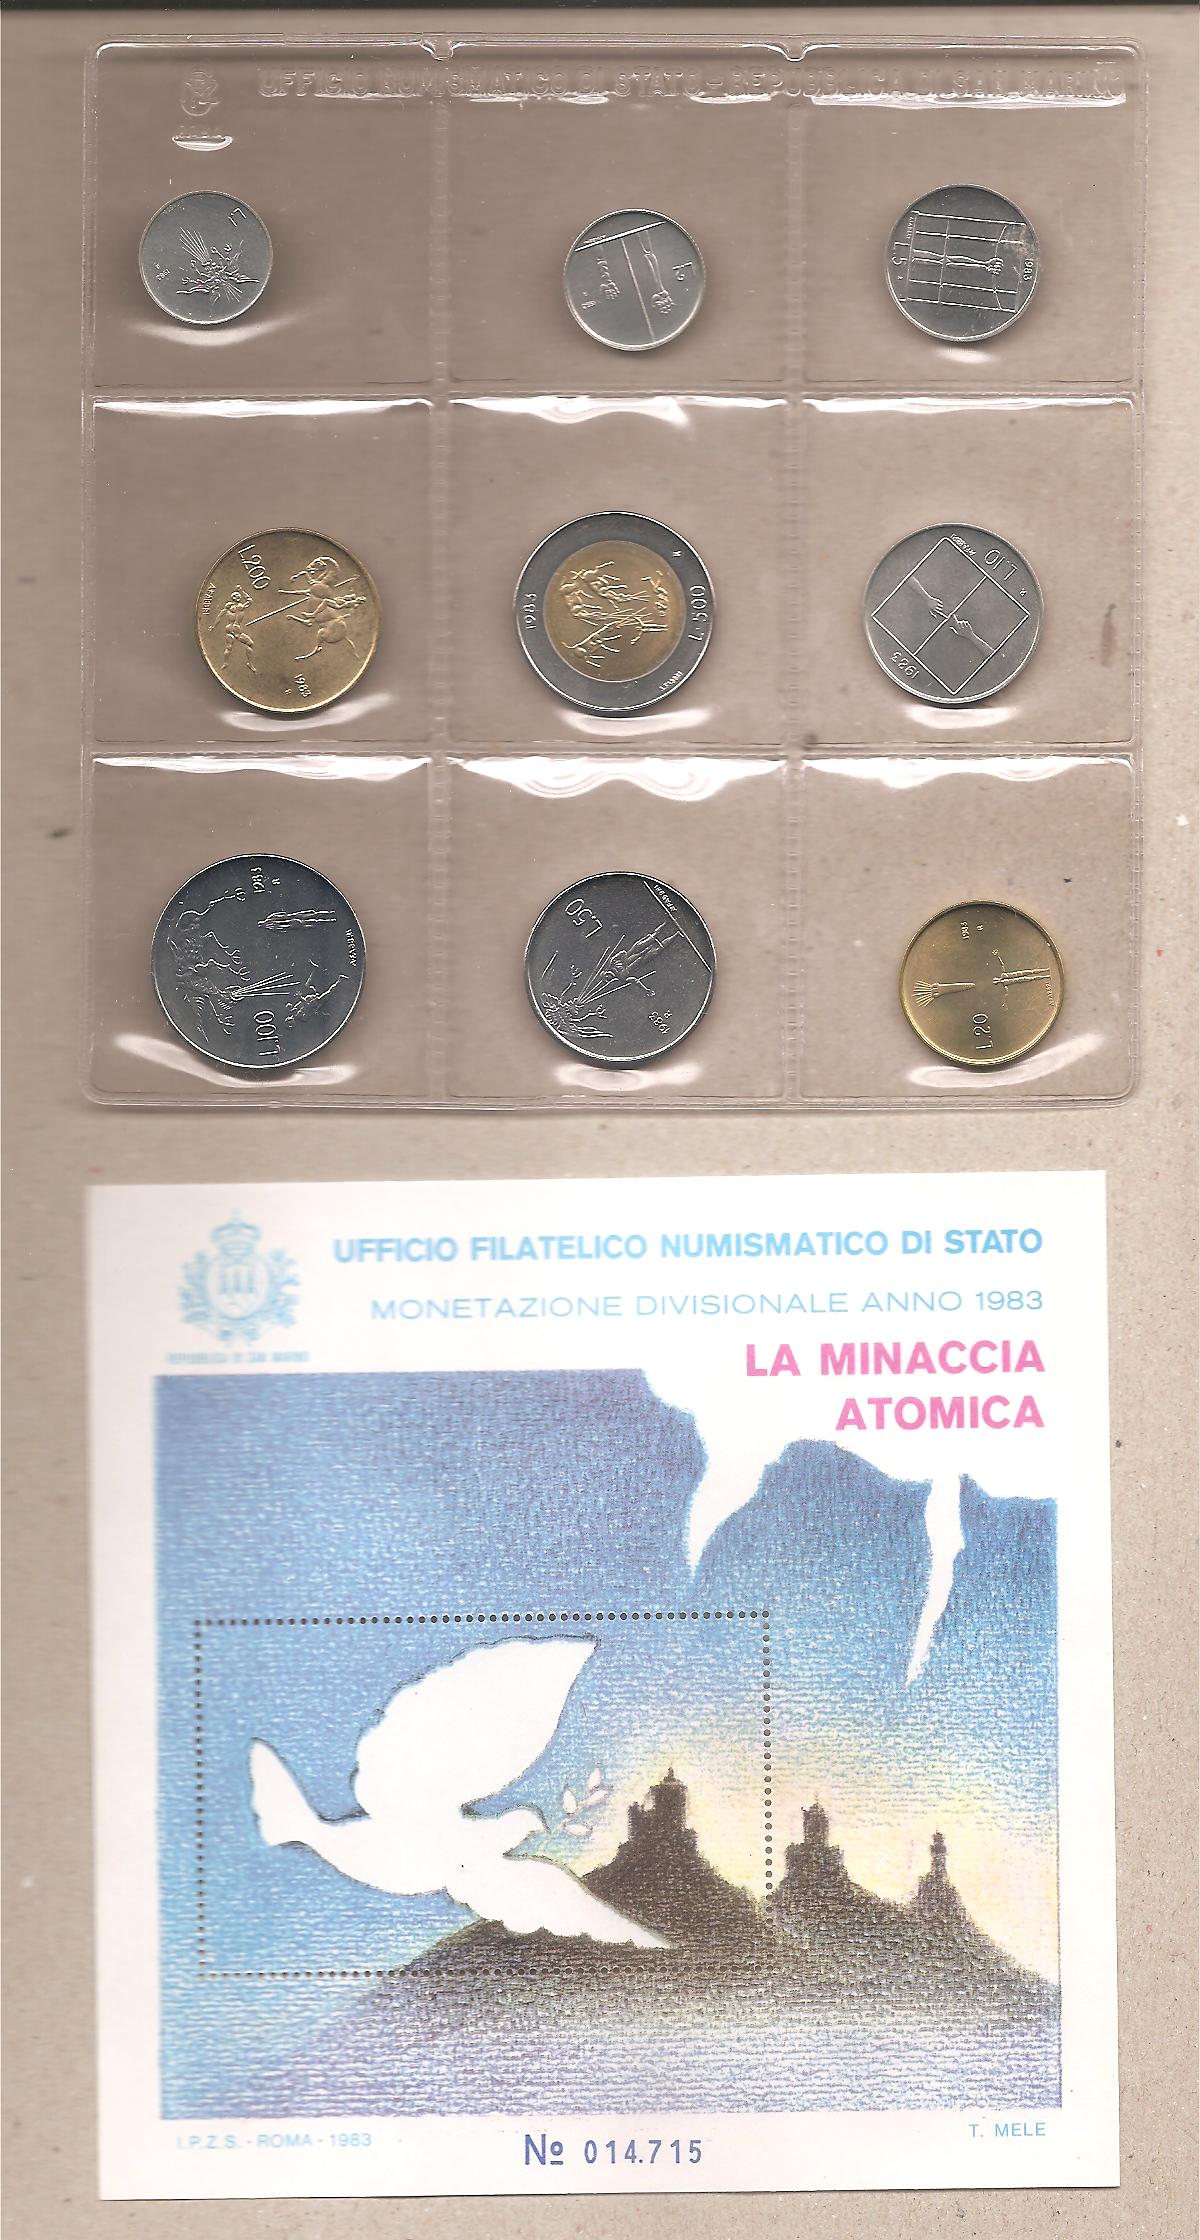 50529 - San Marino - annata nuova FdC in cofanetto per numismatici - 1983